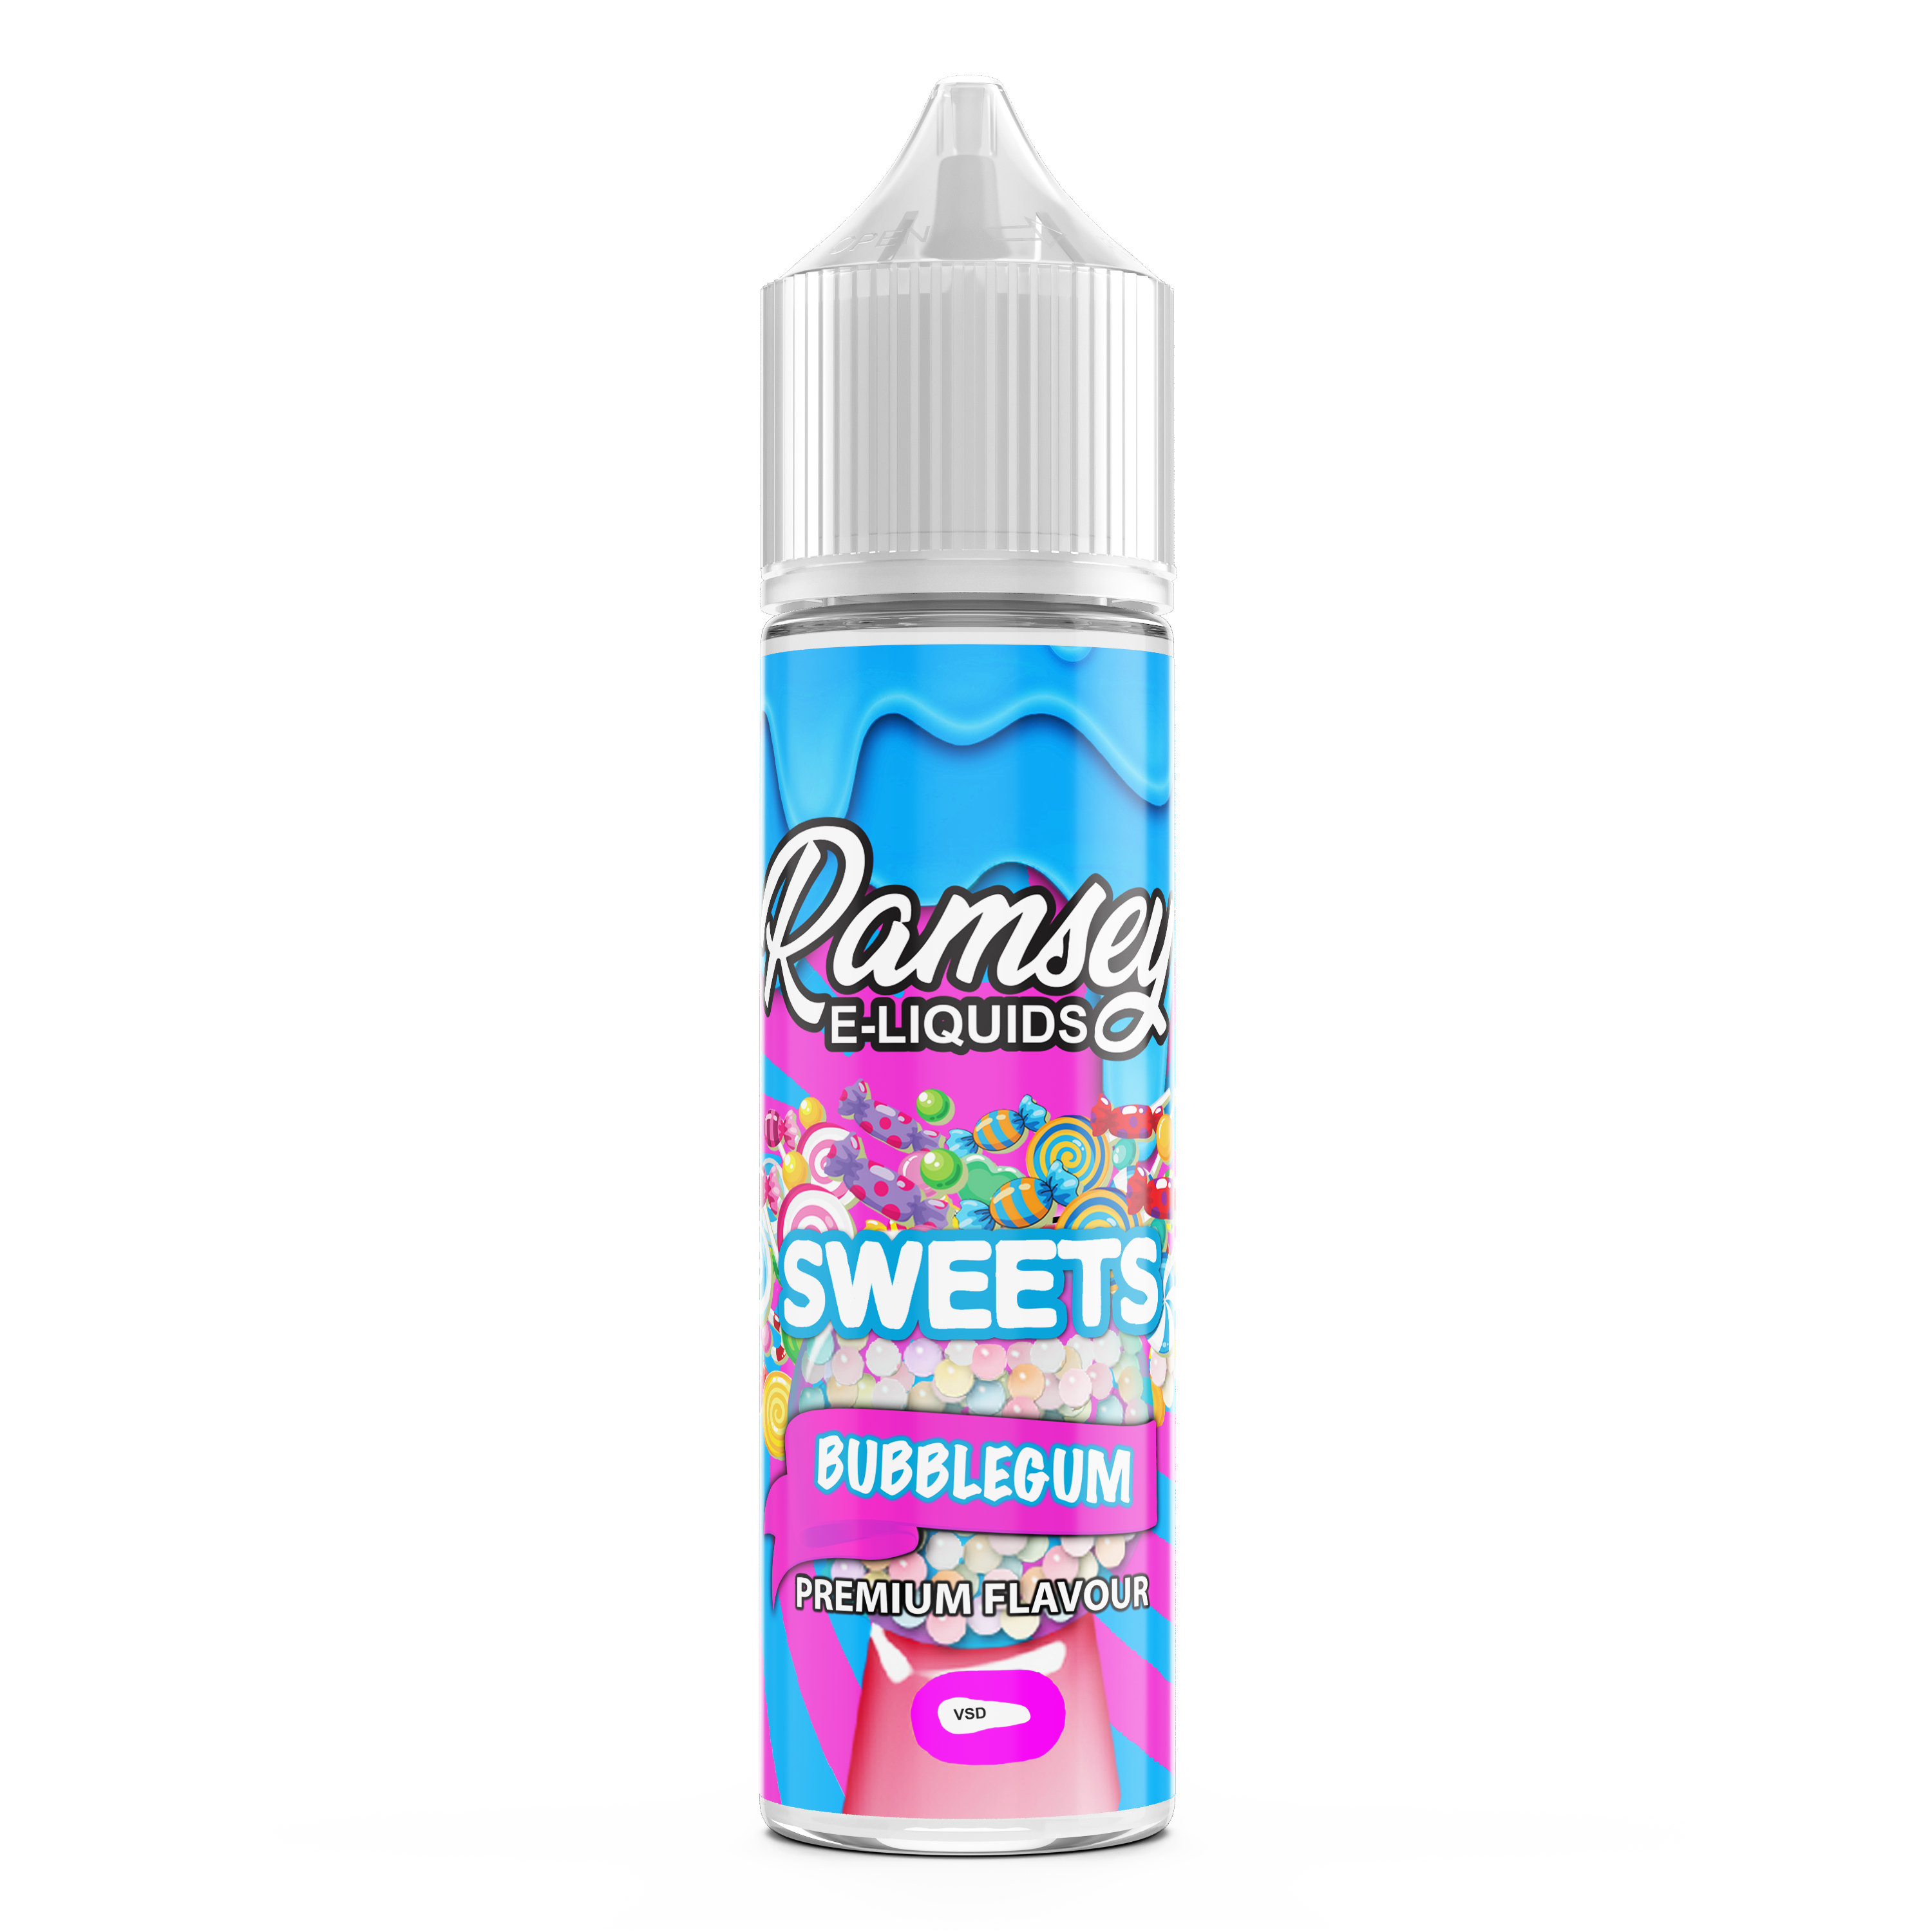 Ramsey E-Liquids Sweets: Bubblegum Sweet 0mg 50ml Shortfill E-Liquid